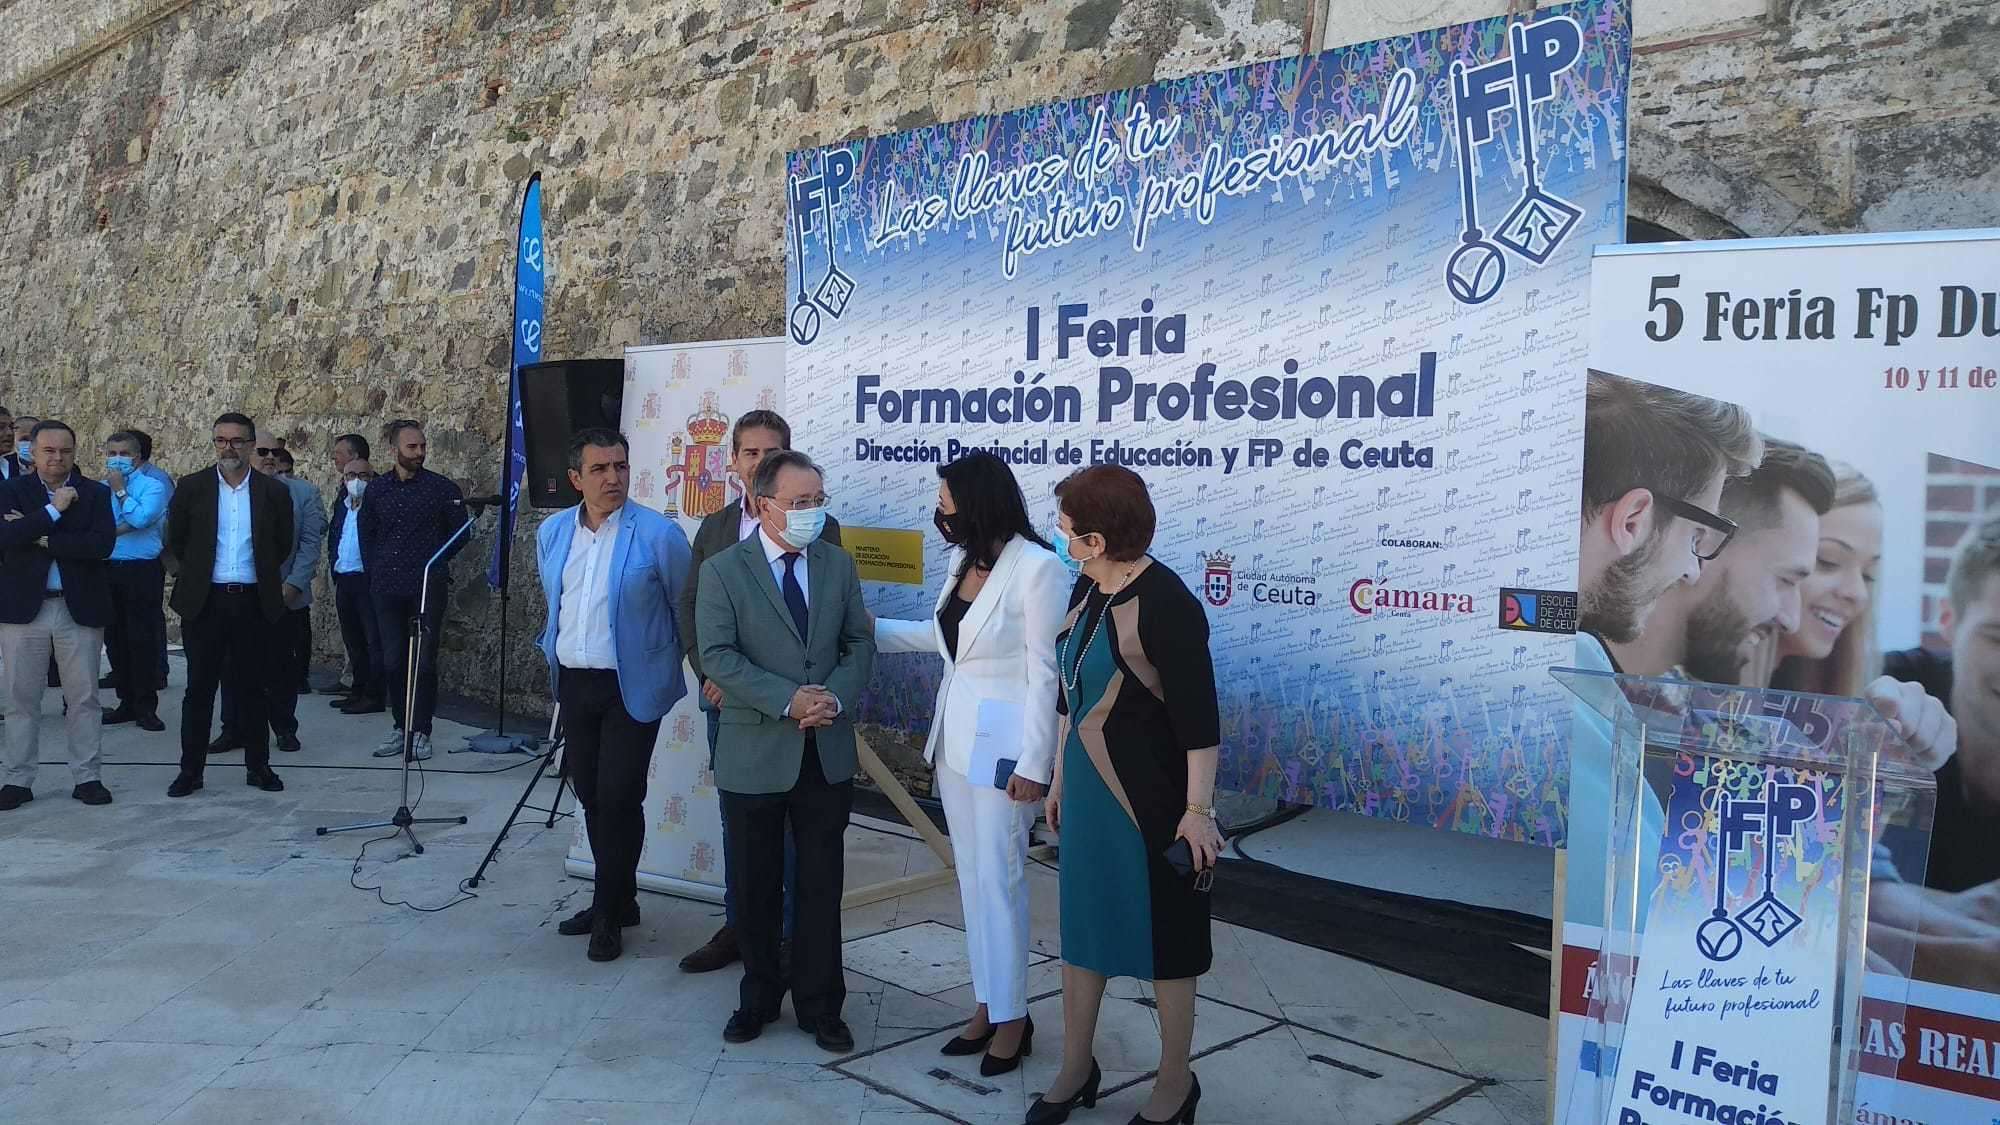 <p>Murallas Reales inauguración de la I Feria de la Formación Profesional.</p>

<p>Juan Vivas, Salvadora Mateos, Yolanda Rodríguez, Karim Bulaix</p>
